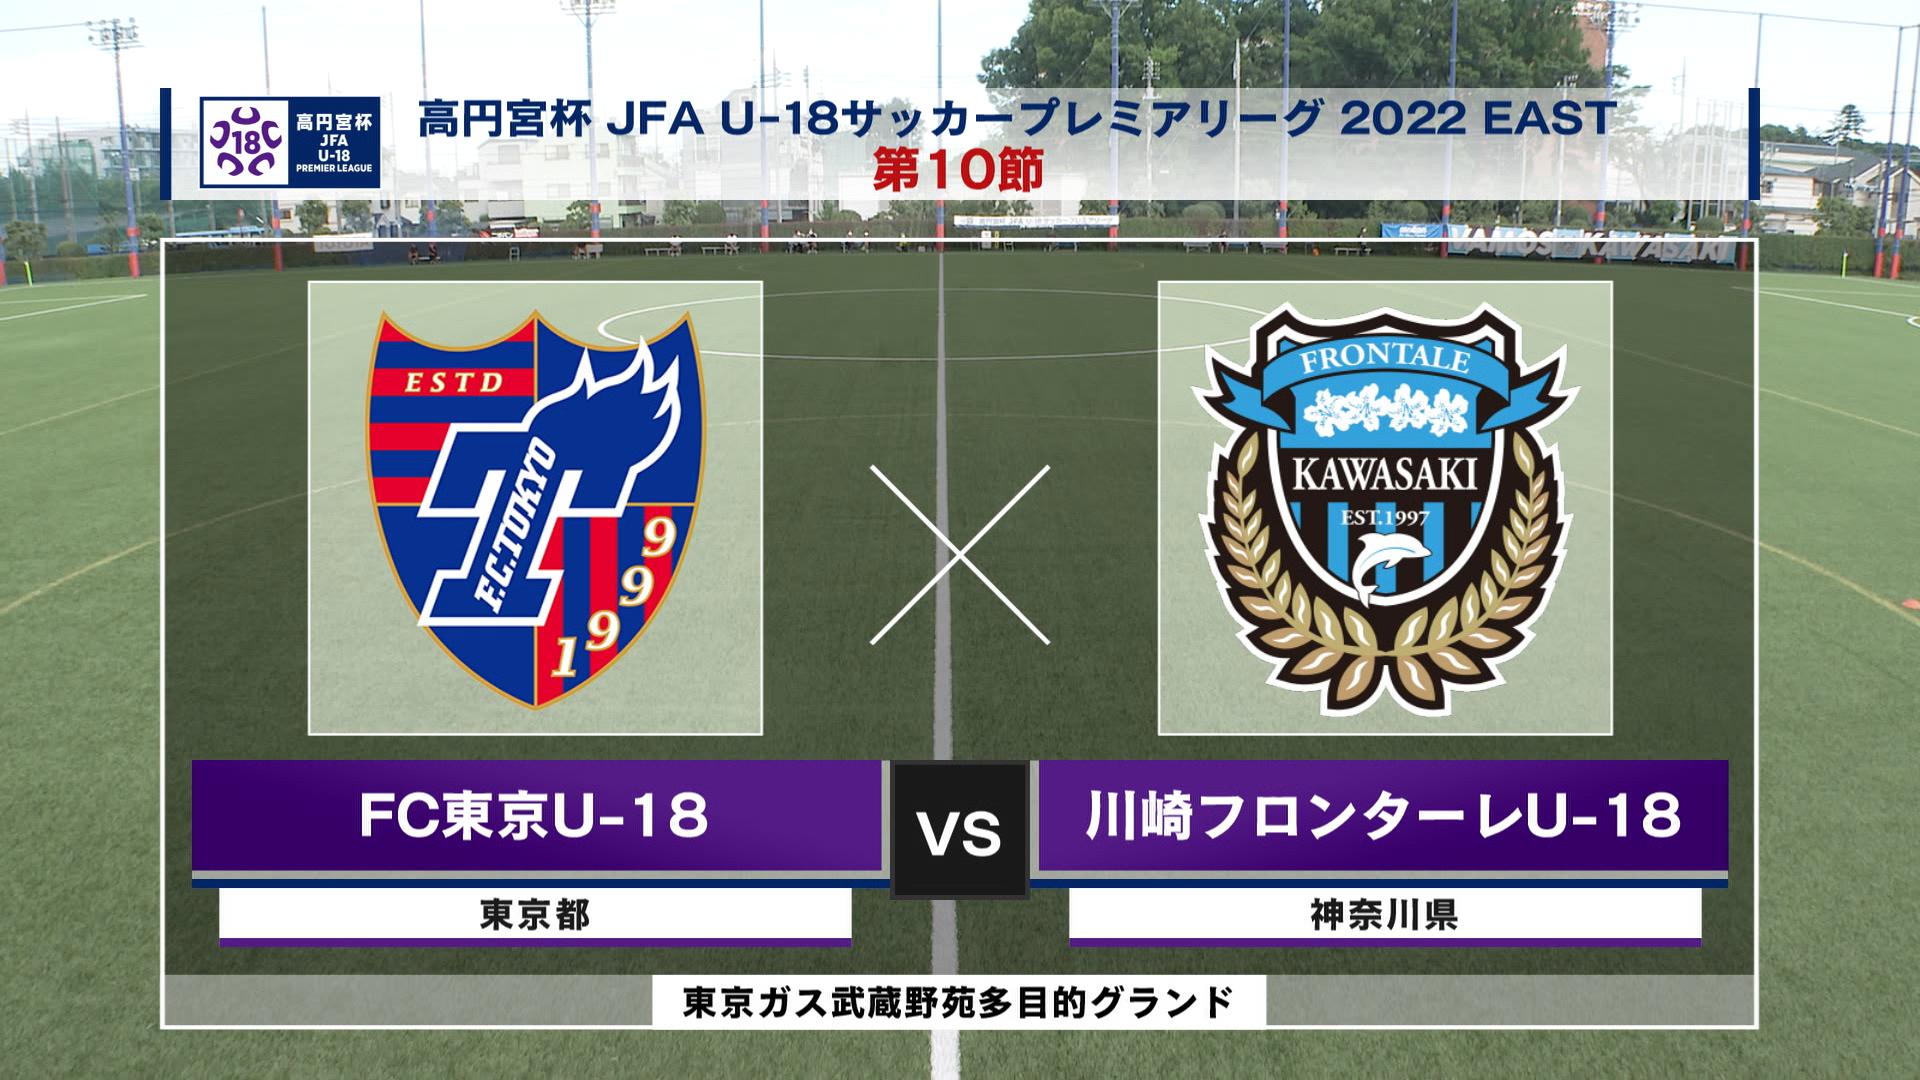 【ハイライト】FC東京U-18 vs. 川崎フロンターレU-18｜高円宮杯 JFA U-18 サッカープレミアリーグ2022 EAST 第10節